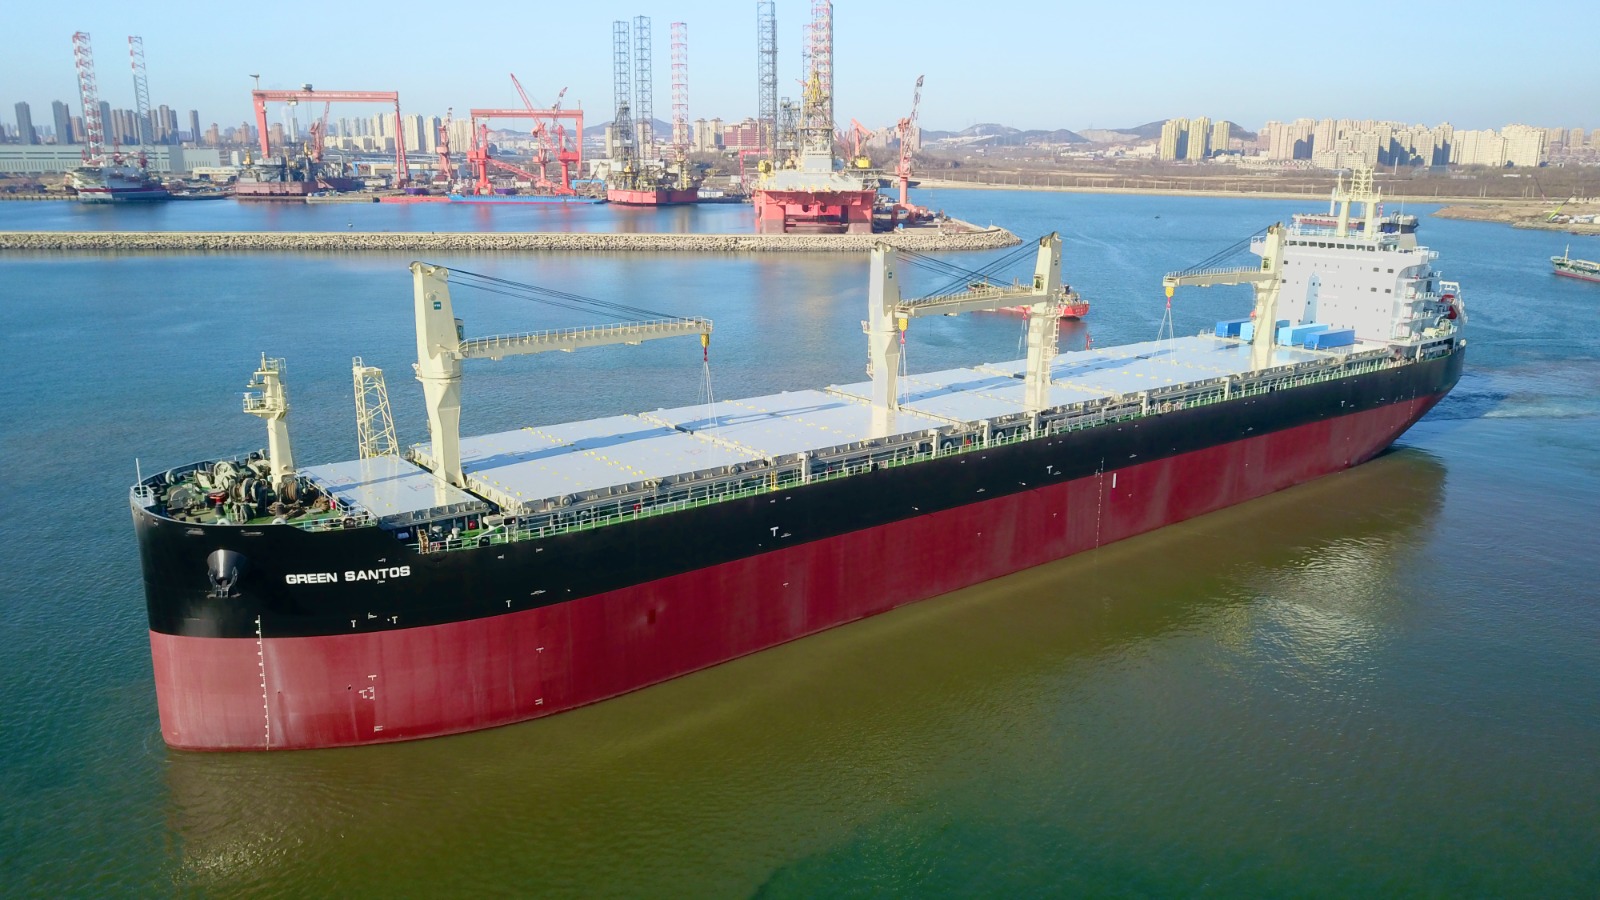 Green Santos, maior navio de transporte de celulose do mundo, com capacidade para transportar 77 mil toneladas.